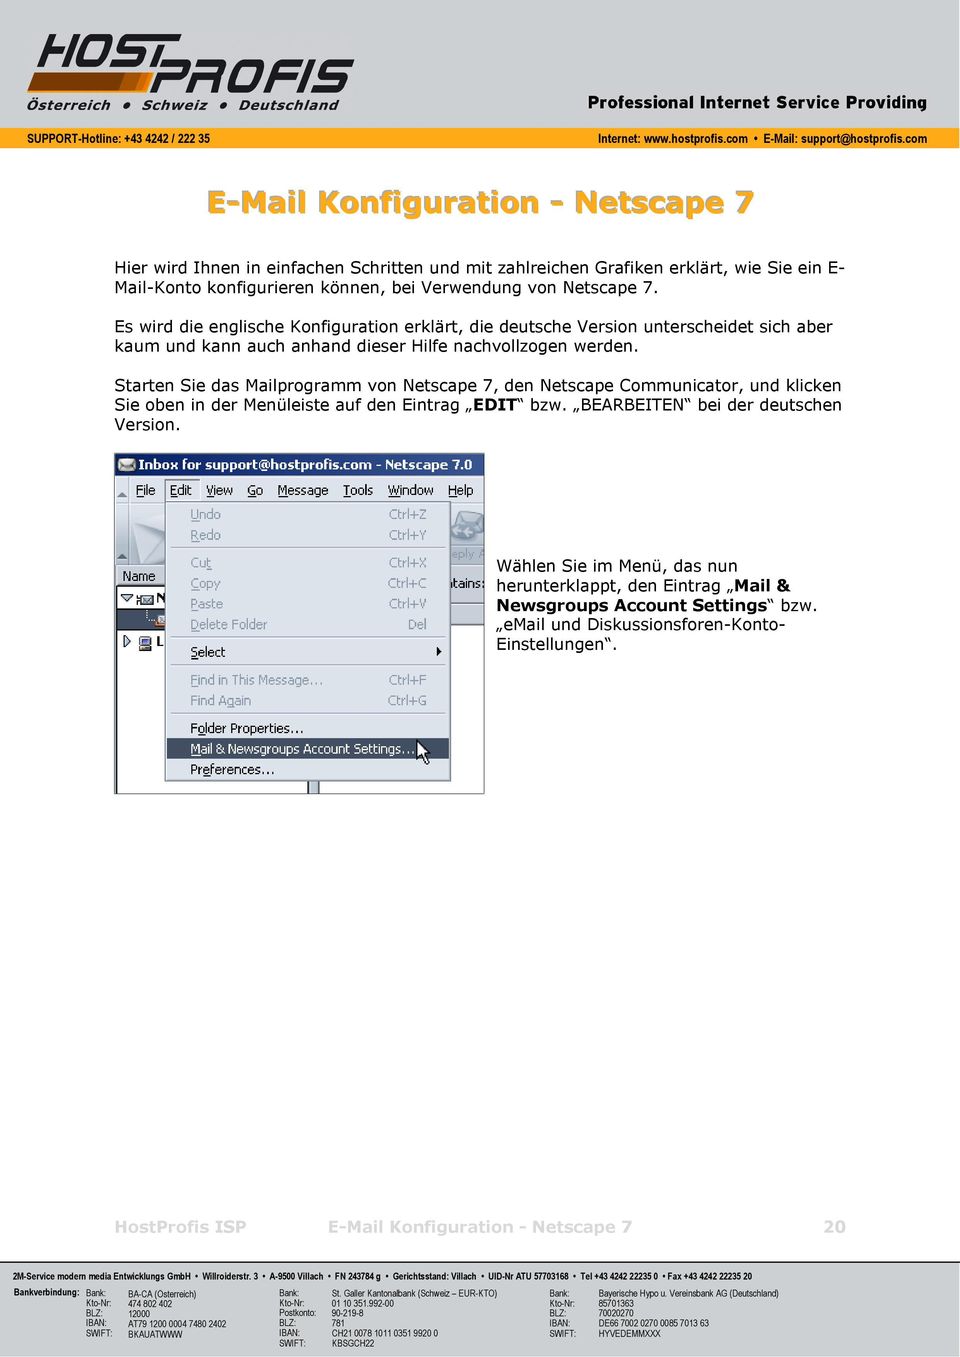 Starten Sie das Mailprogramm von Netscape 7, den Netscape Communicator, und klicken Sie oben in der Menüleiste auf den Eintrag EDIT bzw. BEARBEITEN bei der deutschen Version.